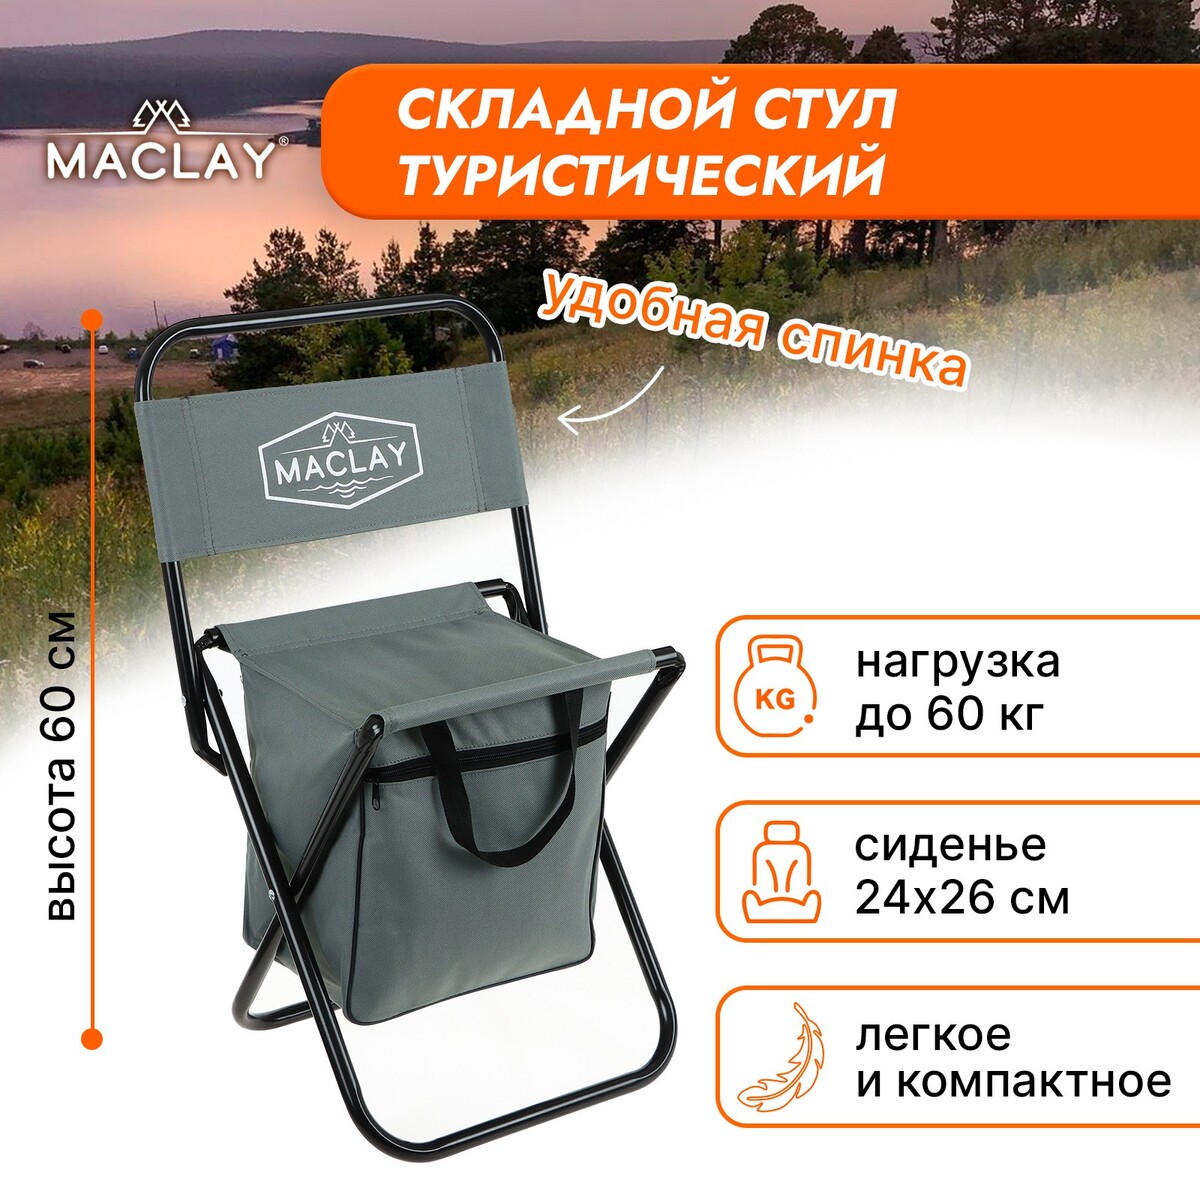 Стул туристический с сумкой 24 х 26 х 60 см, до 60 кг, цвет серый Maclay 02643755 - фото 1